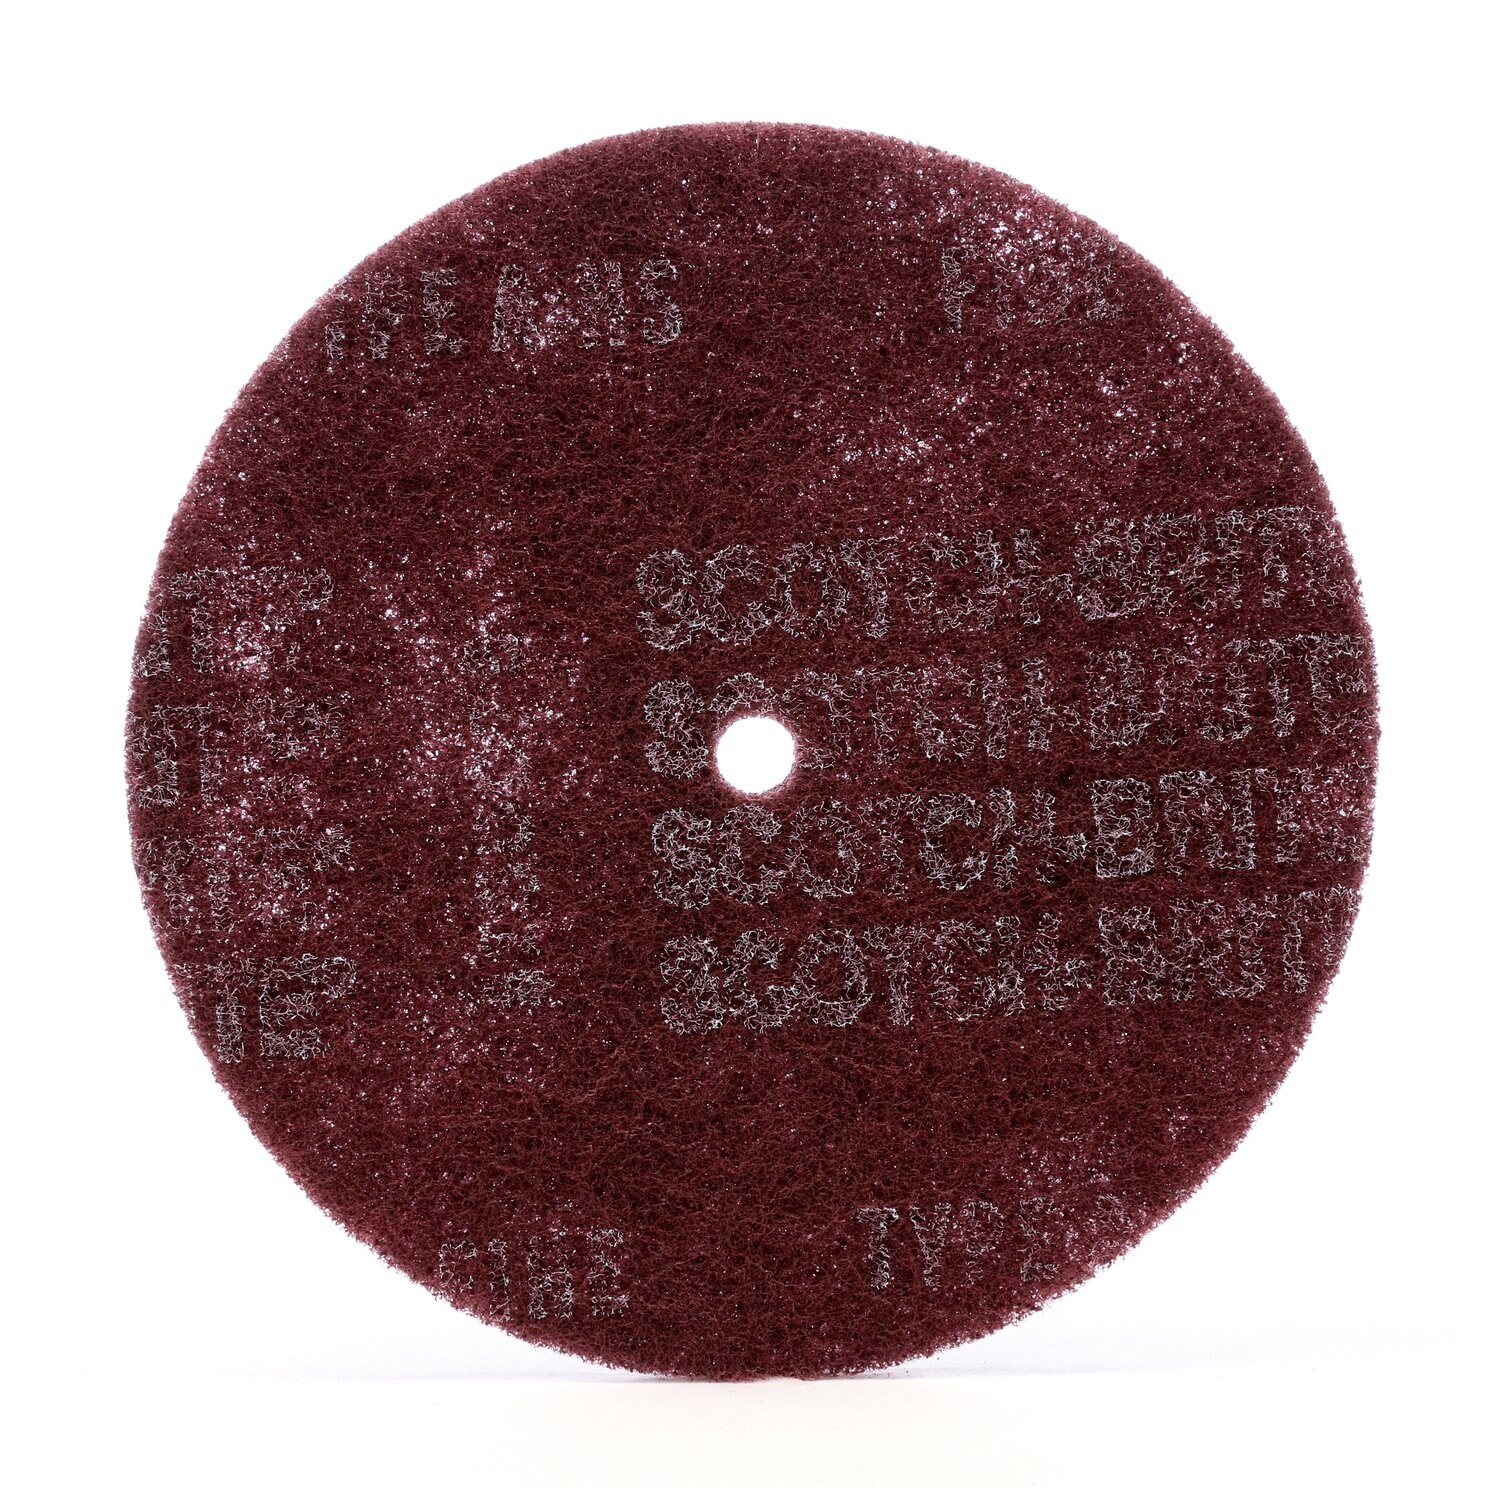 7010364352 - Scotch-Brite High Strength Disc, HS-DC, A/O Medium, 4 in x 1/2 in, 150
ea/Case